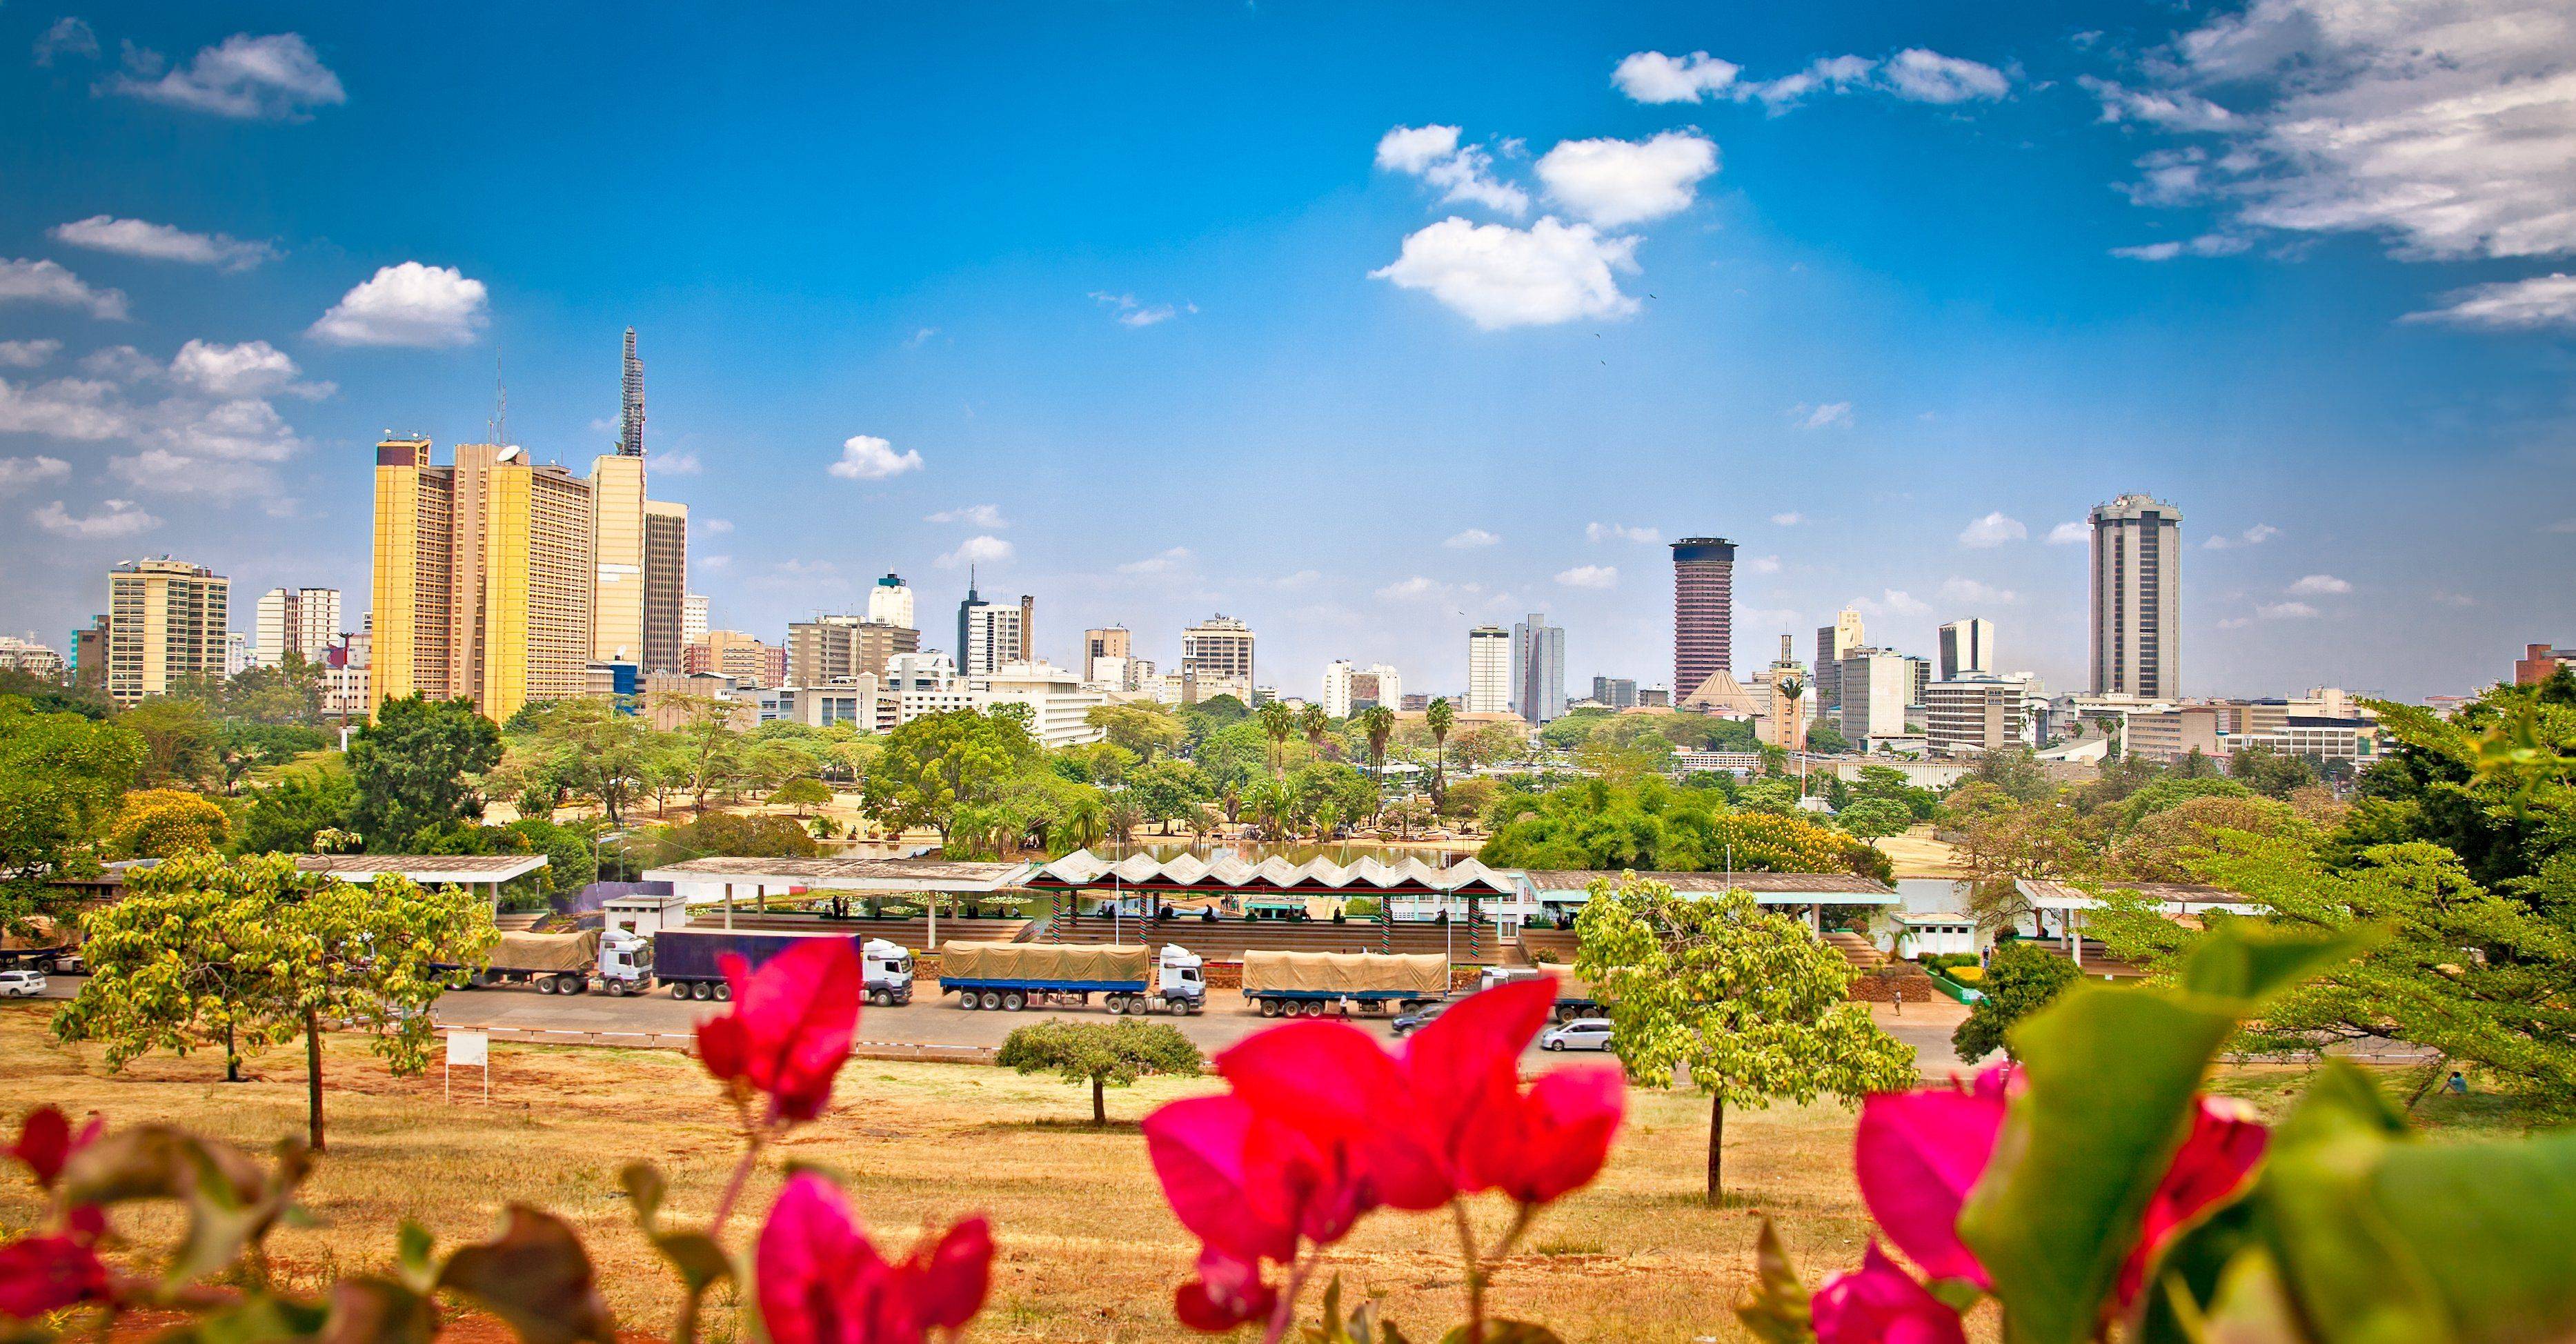 ¡Bienvenidos a Nairobi!